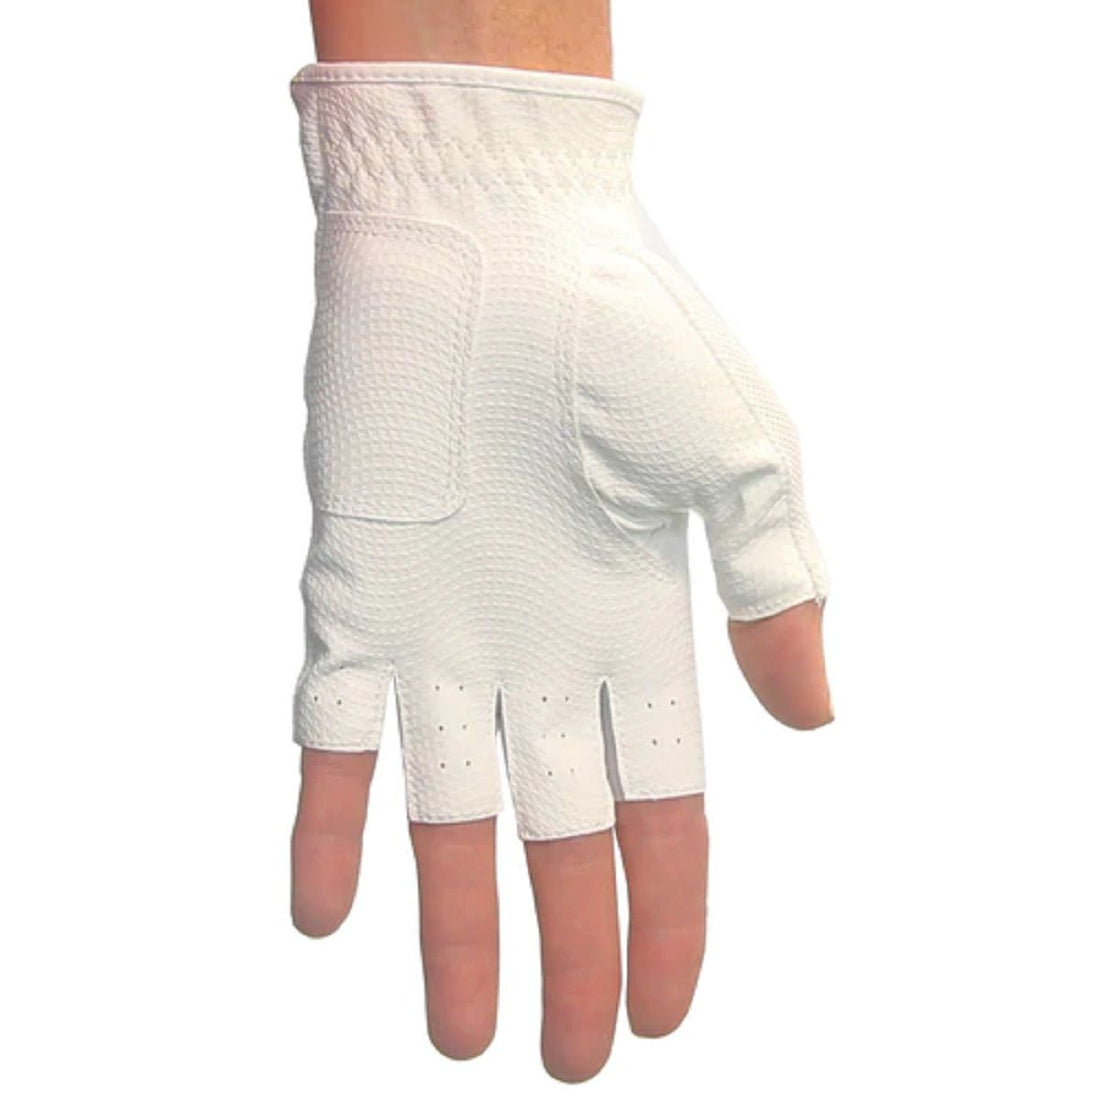 Orlimar Allante Half-Finger Golf Glove